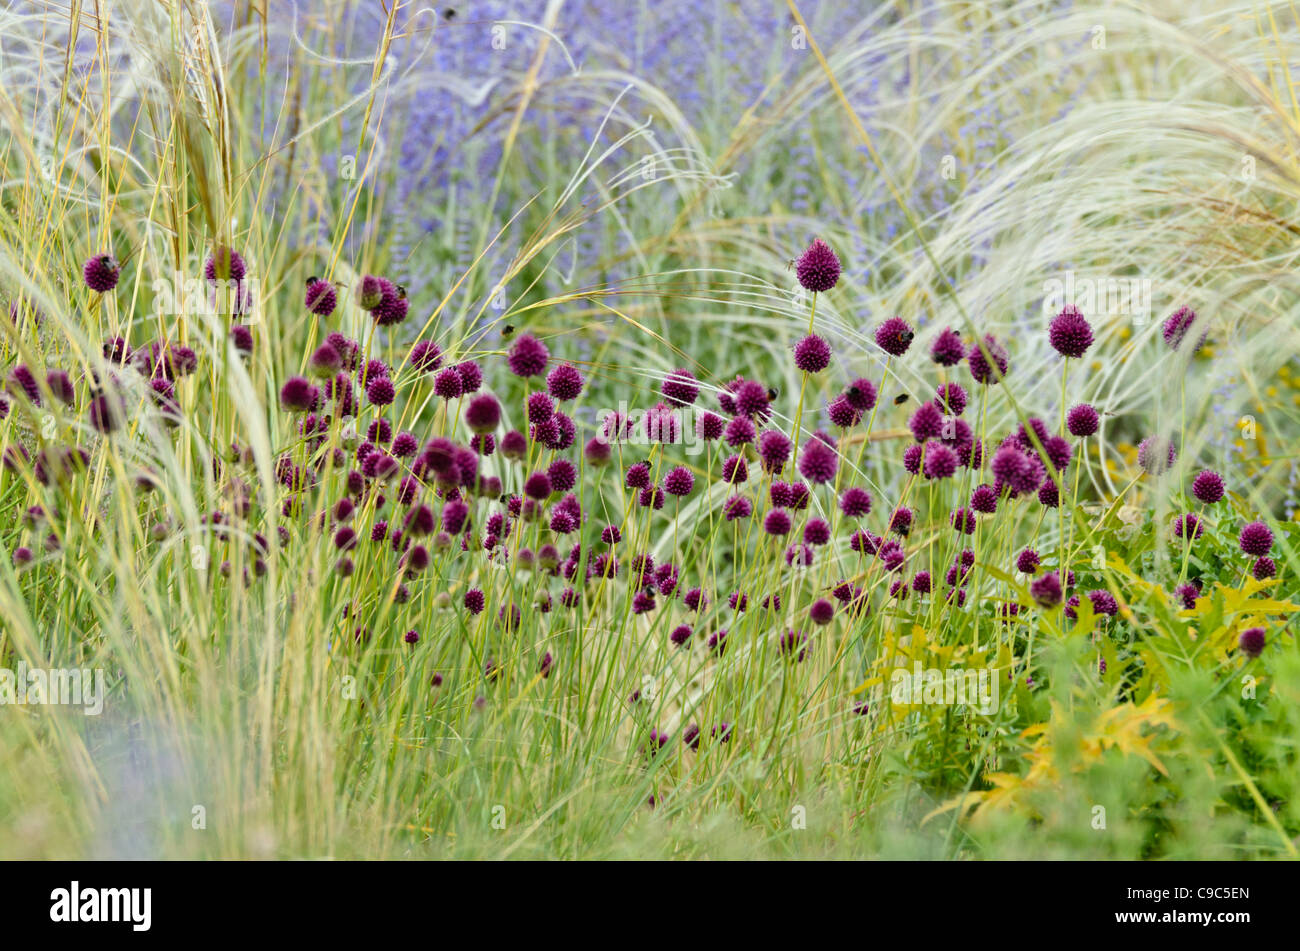 Round-headed leek (Allium sphaerocephalon), feather grass (Stipa barbata) and Russian sage (Perovskia abrotanoides) Stock Photo